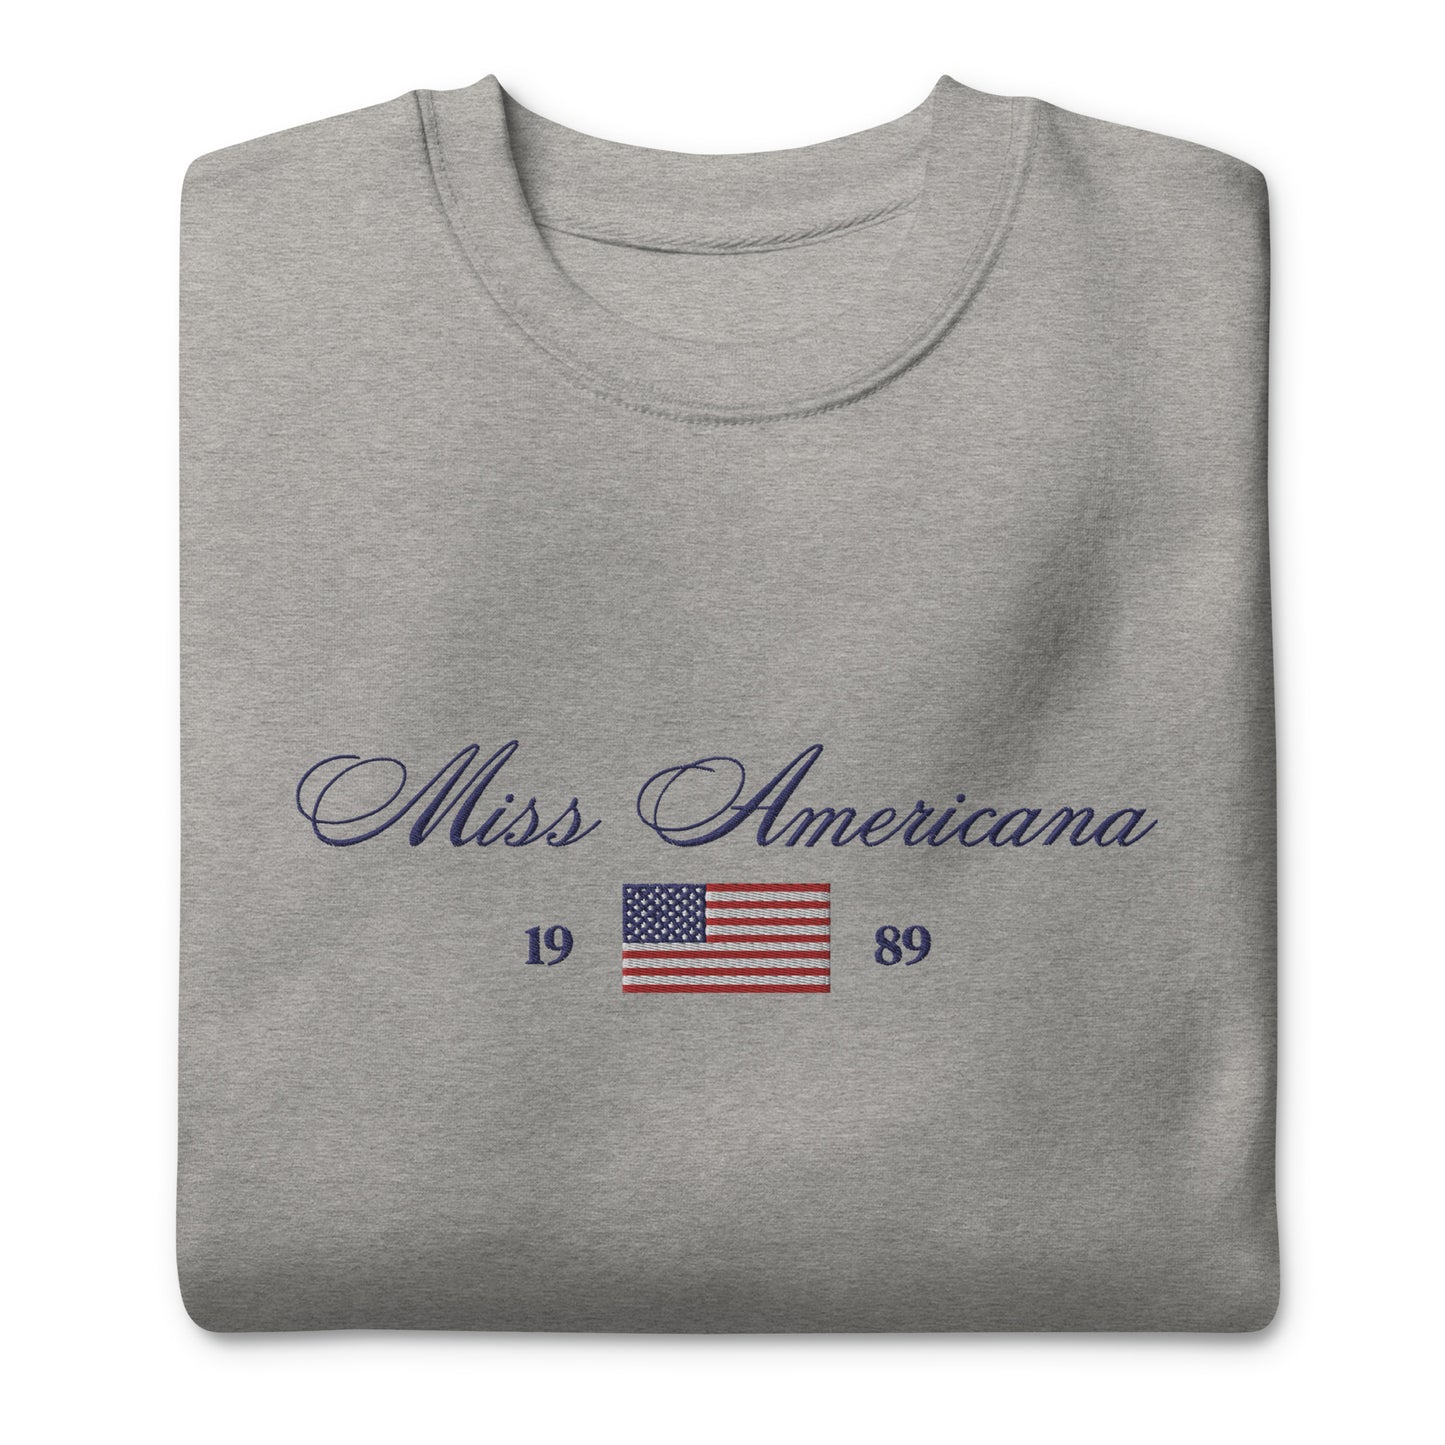 Miss Americana Vintage Embroidered Crewneck